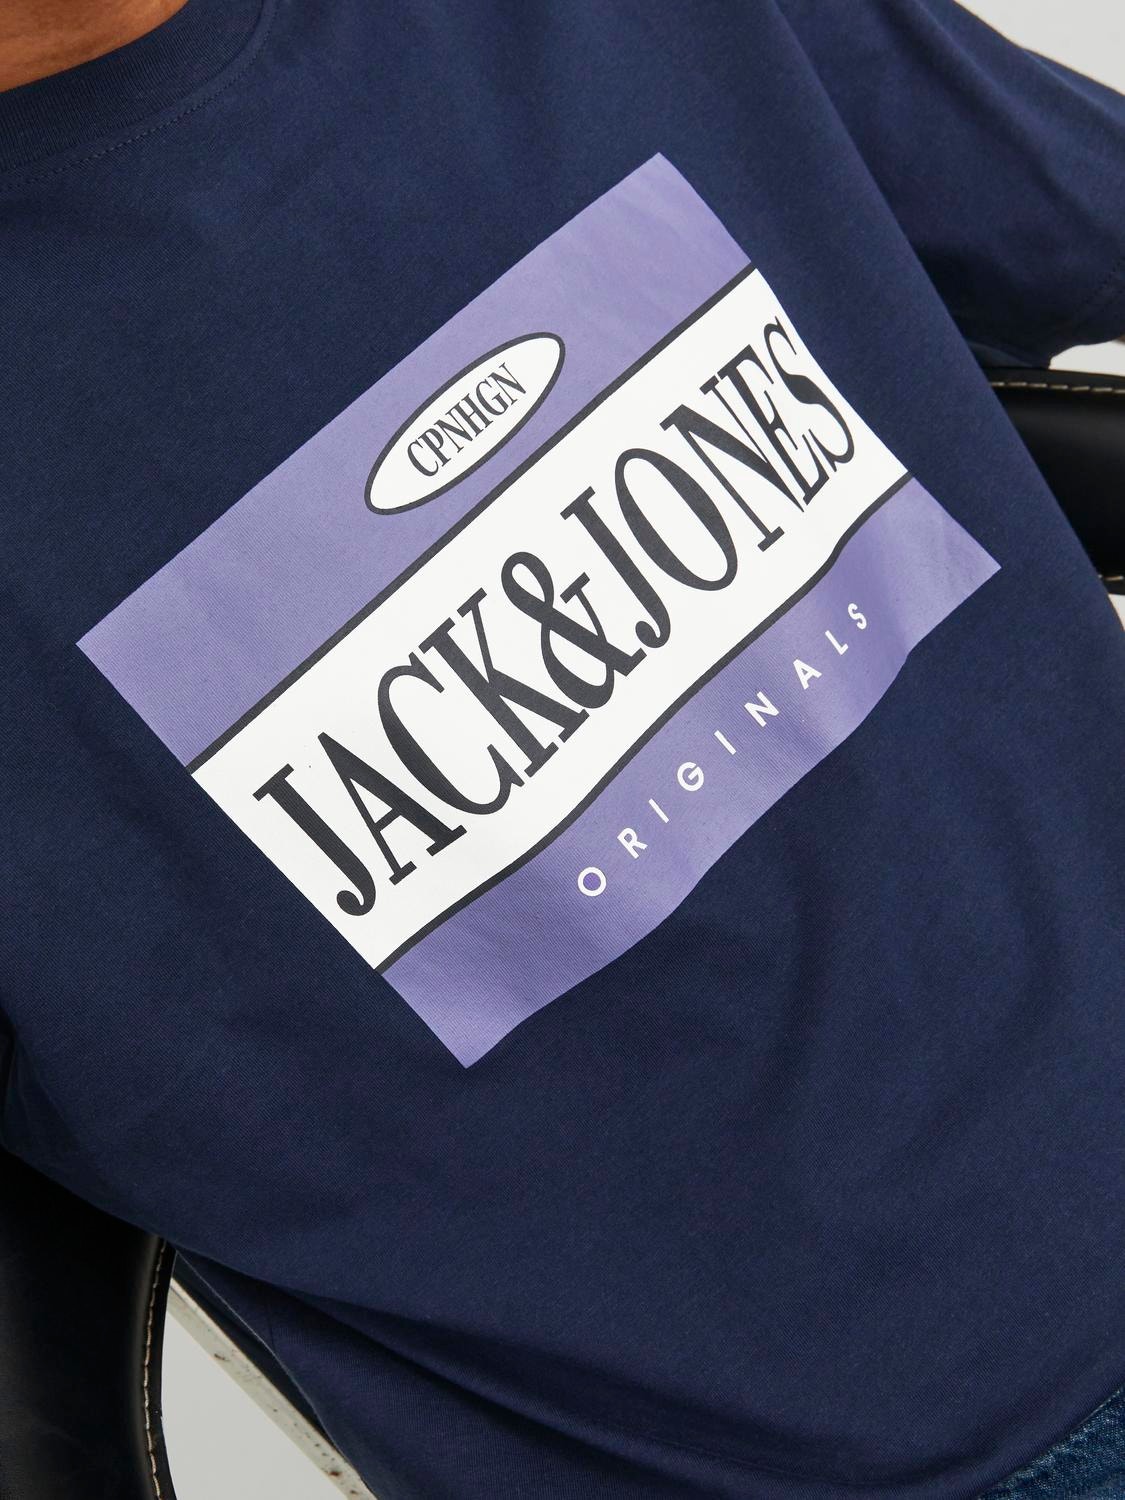 Jack & Jones T-shirt Logo Decote Redondo -Navy Blazer - 12240664